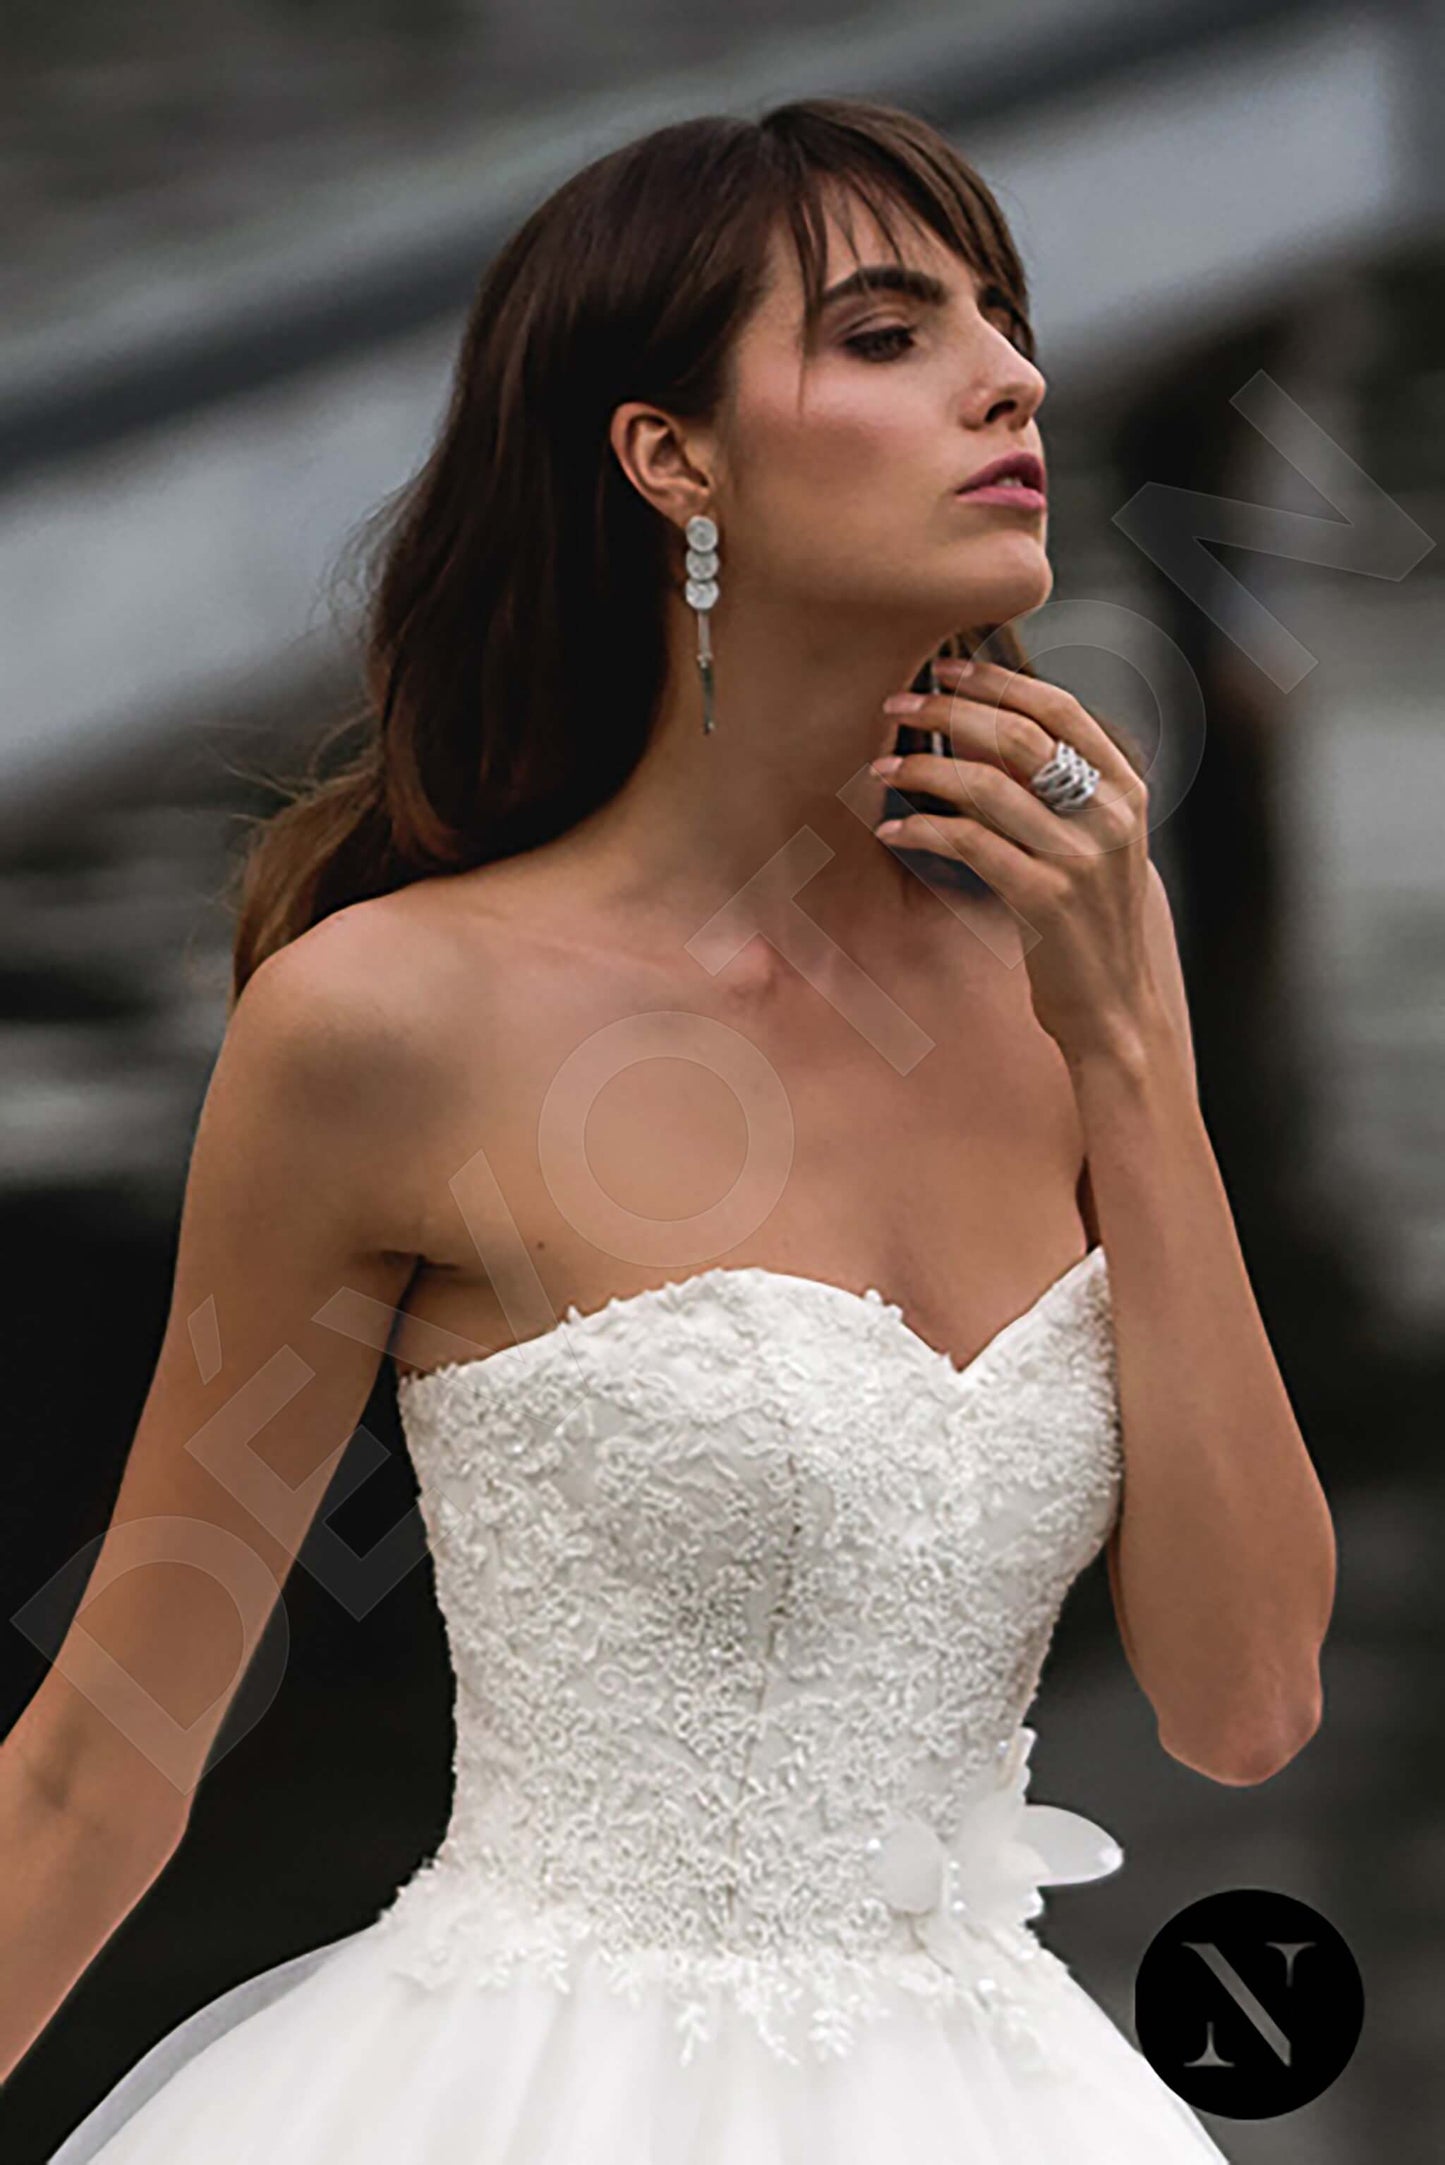 Esperanza Open back Princess/Ball Gown Strapless Wedding Dress 2